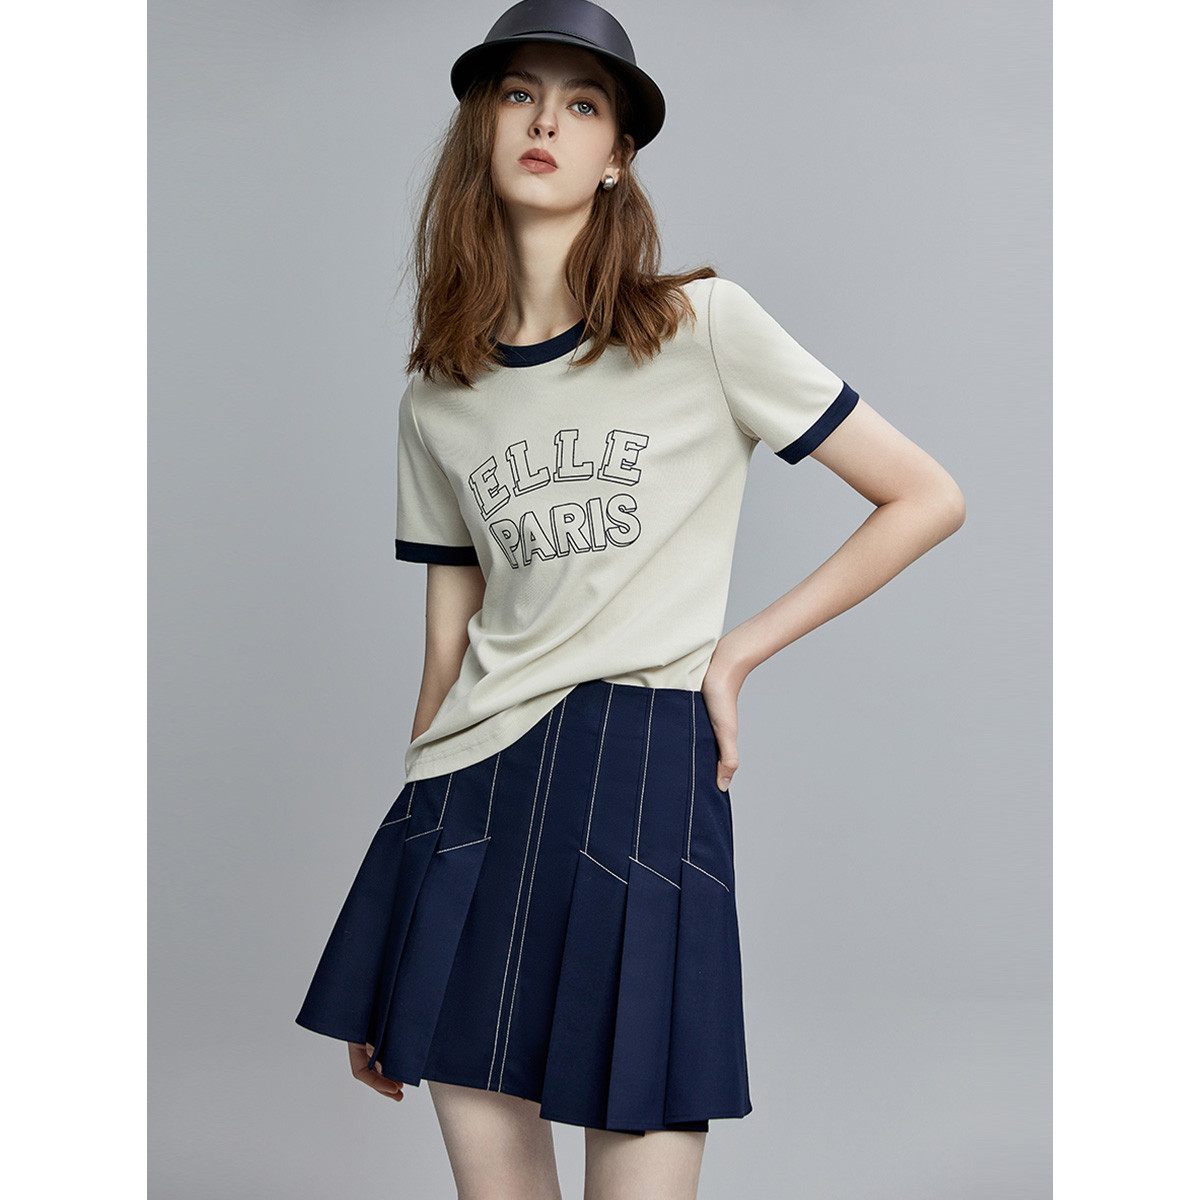 ELLE 夏季时尚休闲风撞色字母印花设计女式短袖T恤 126元包邮